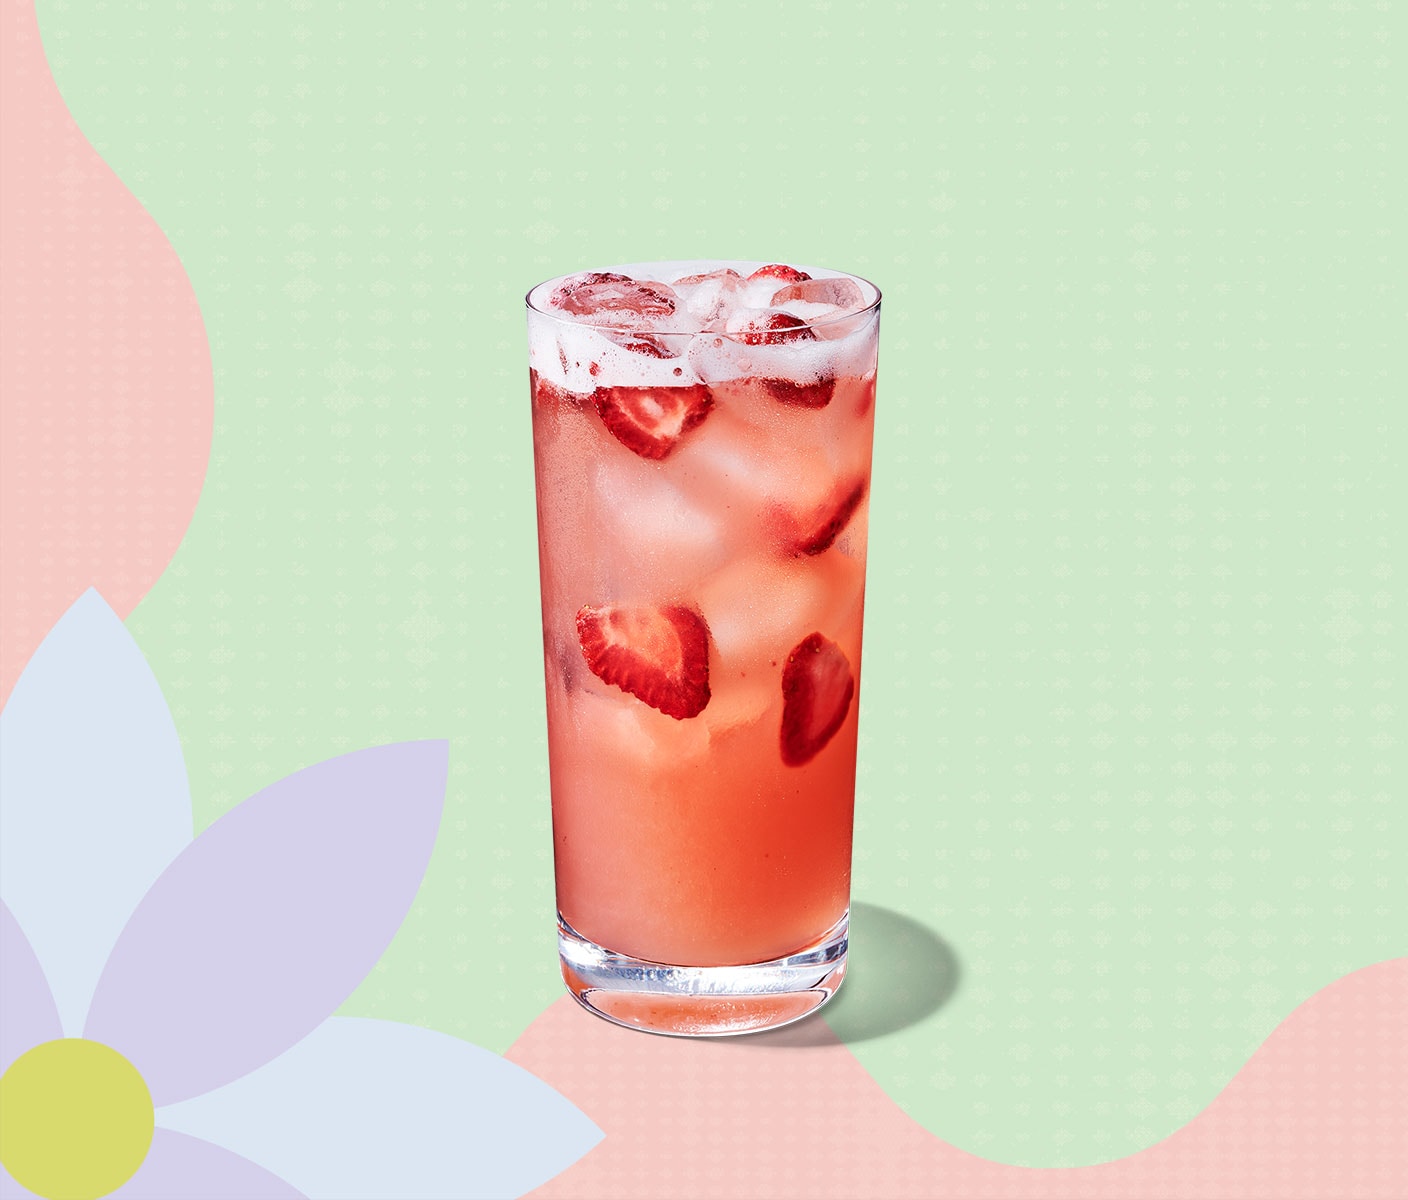 Une boisson glacée de couleur rose contenant des morceaux de fraises.